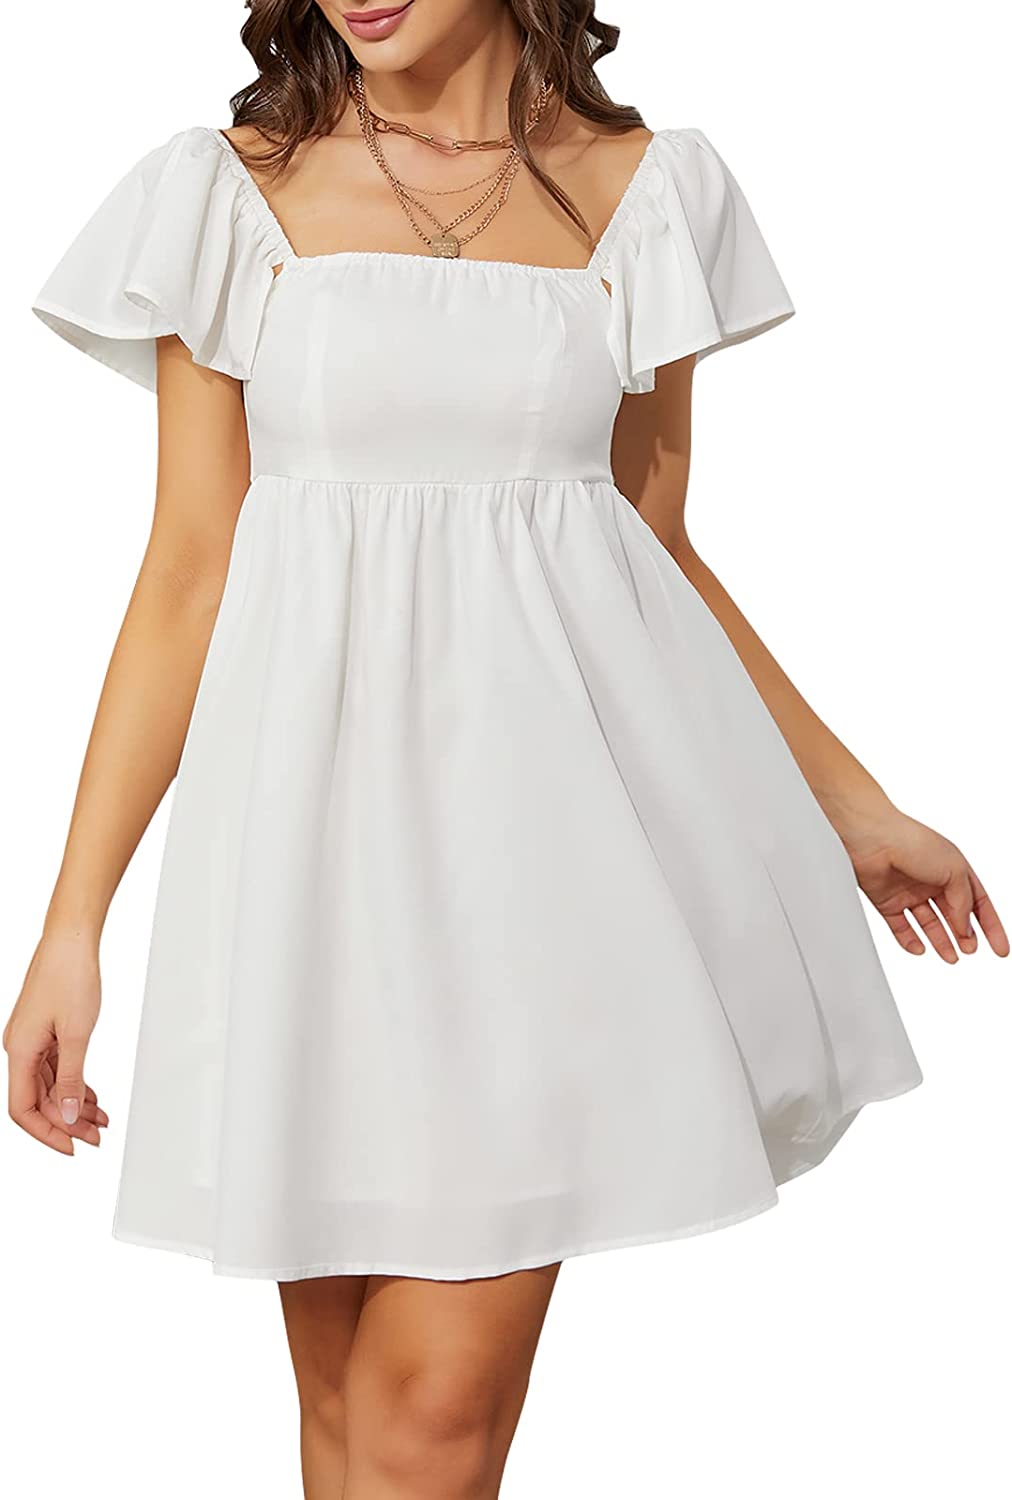 Exlura Women's Cap Short Sleeve Square Neck Short Dress High Waist A-L